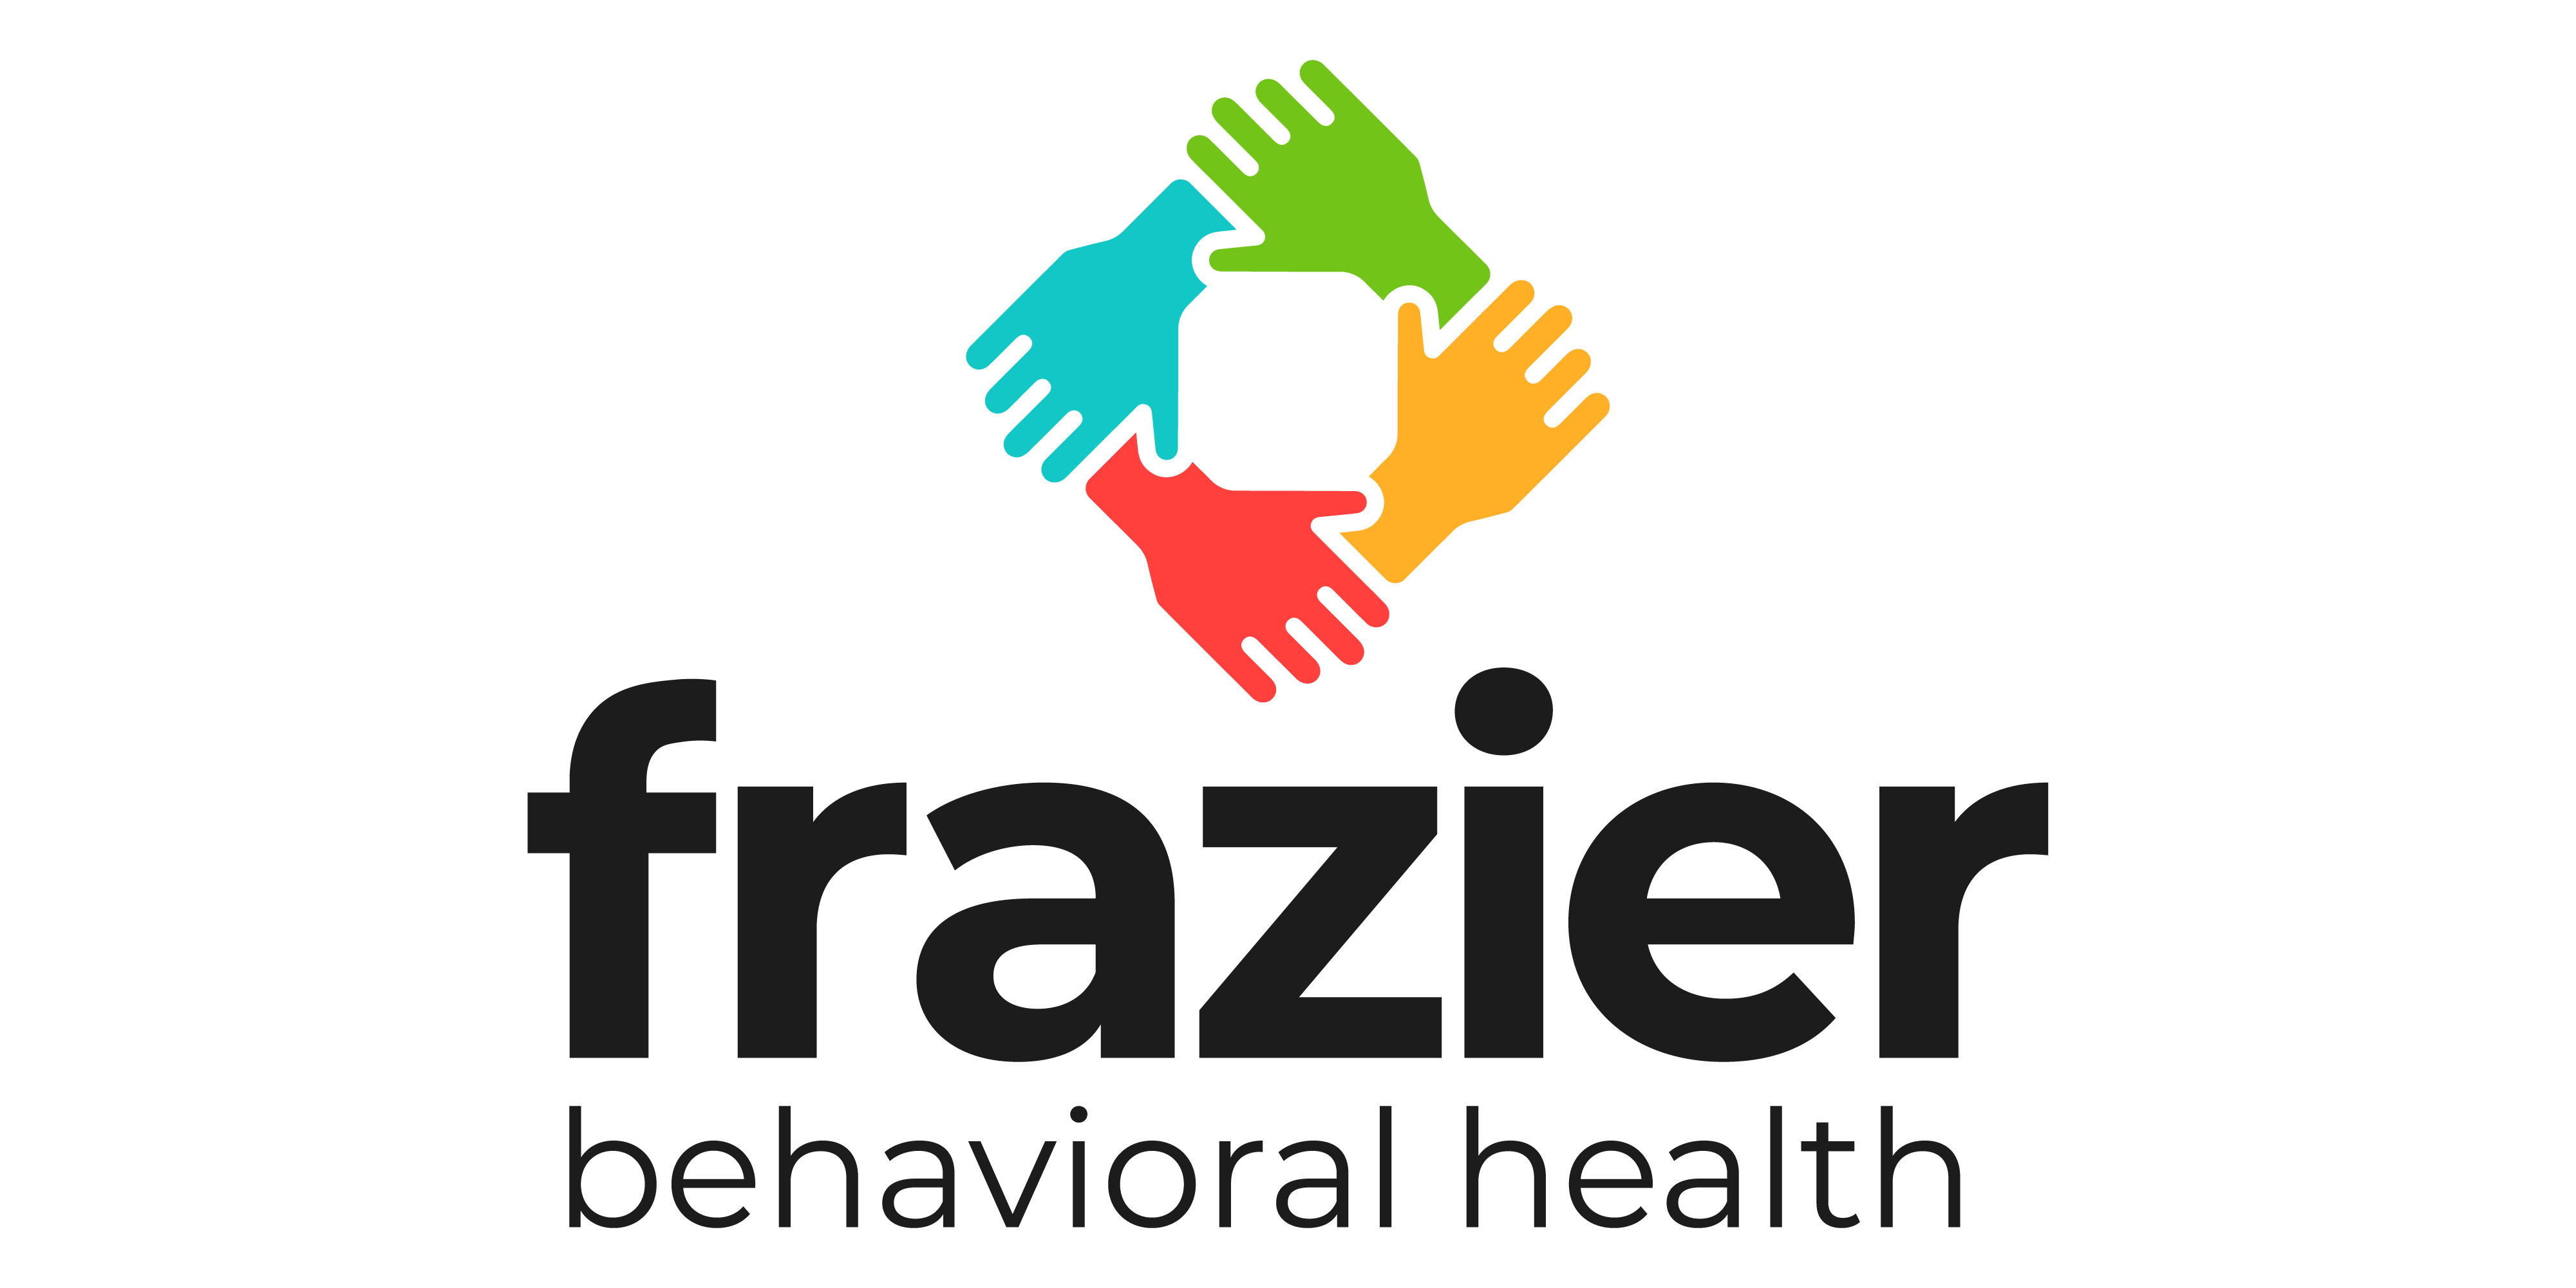 003.9 Frazier Behavioral Health